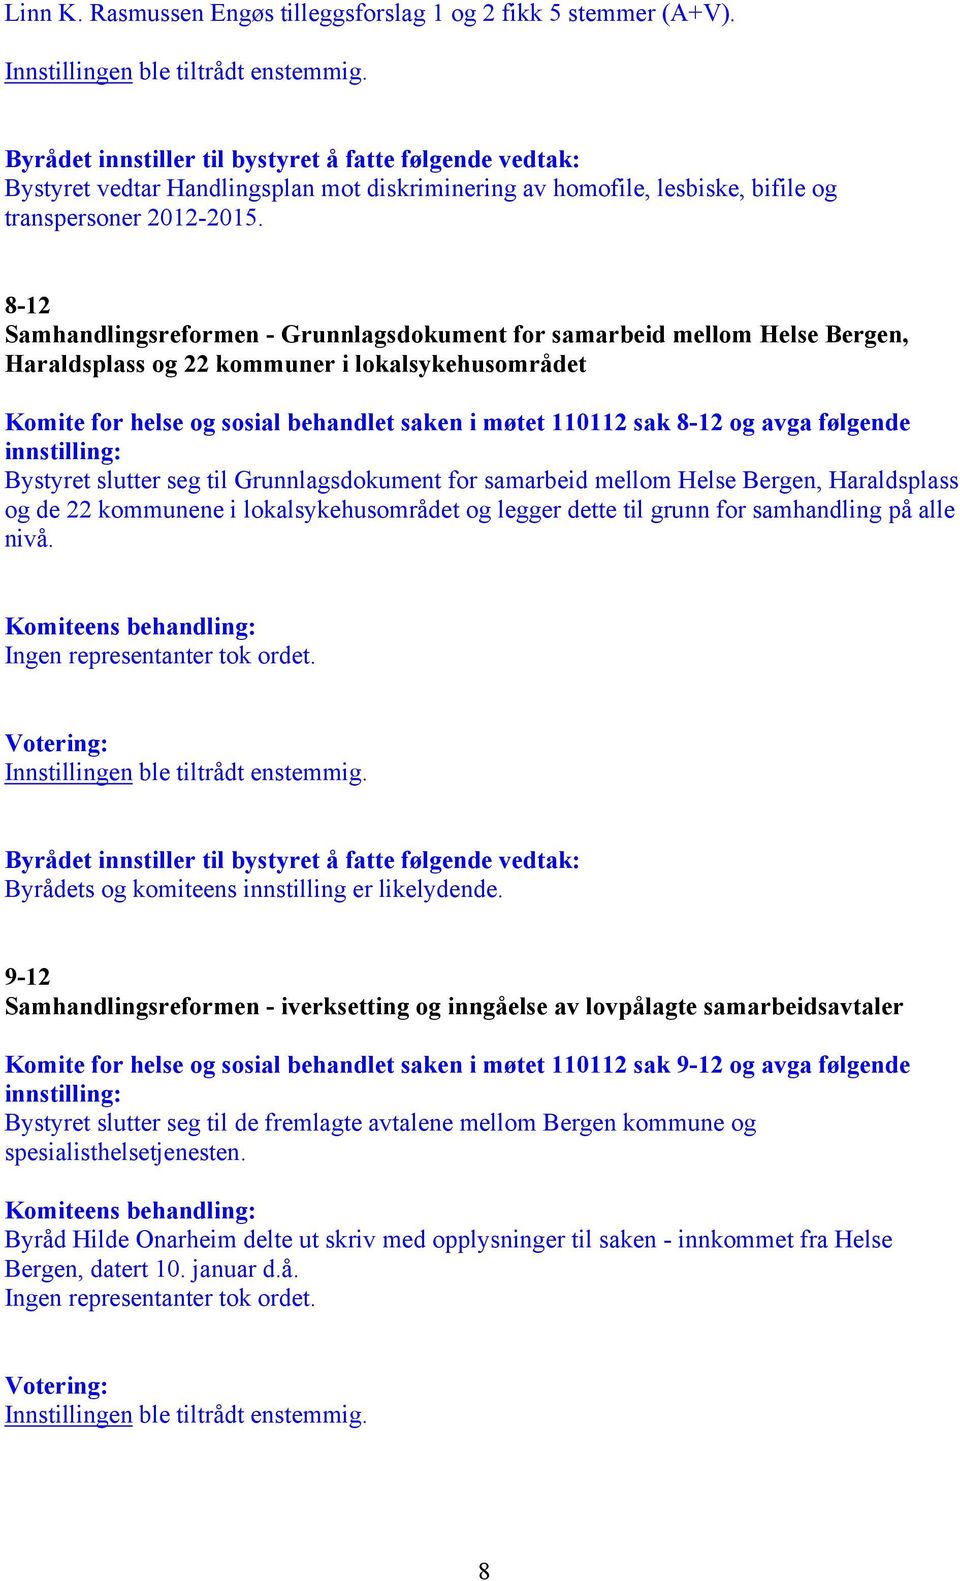 8-12 Samhandlingsreformen - Grunnlagsdokument for samarbeid mellom Helse Bergen, Haraldsplass og 22 kommuner i lokalsykehusområdet Komite for helse og sosial behandlet saken i møtet 110112 sak 8-12